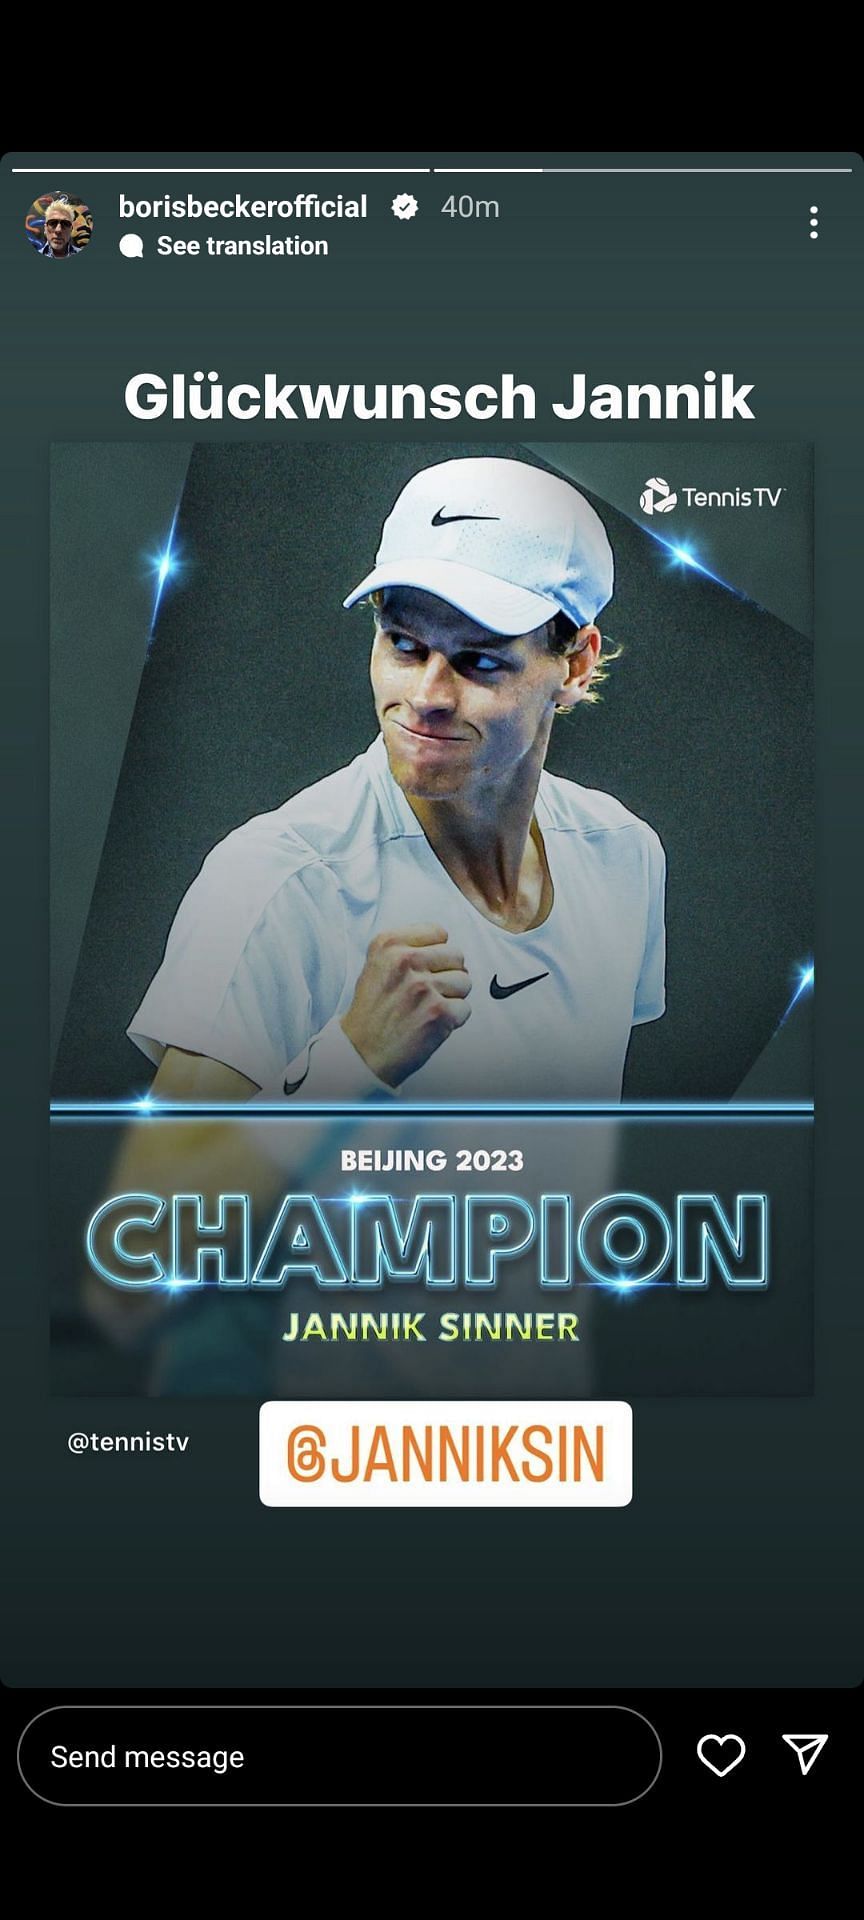 Boris Becker congratulates Jannik Sinner via Instagram.